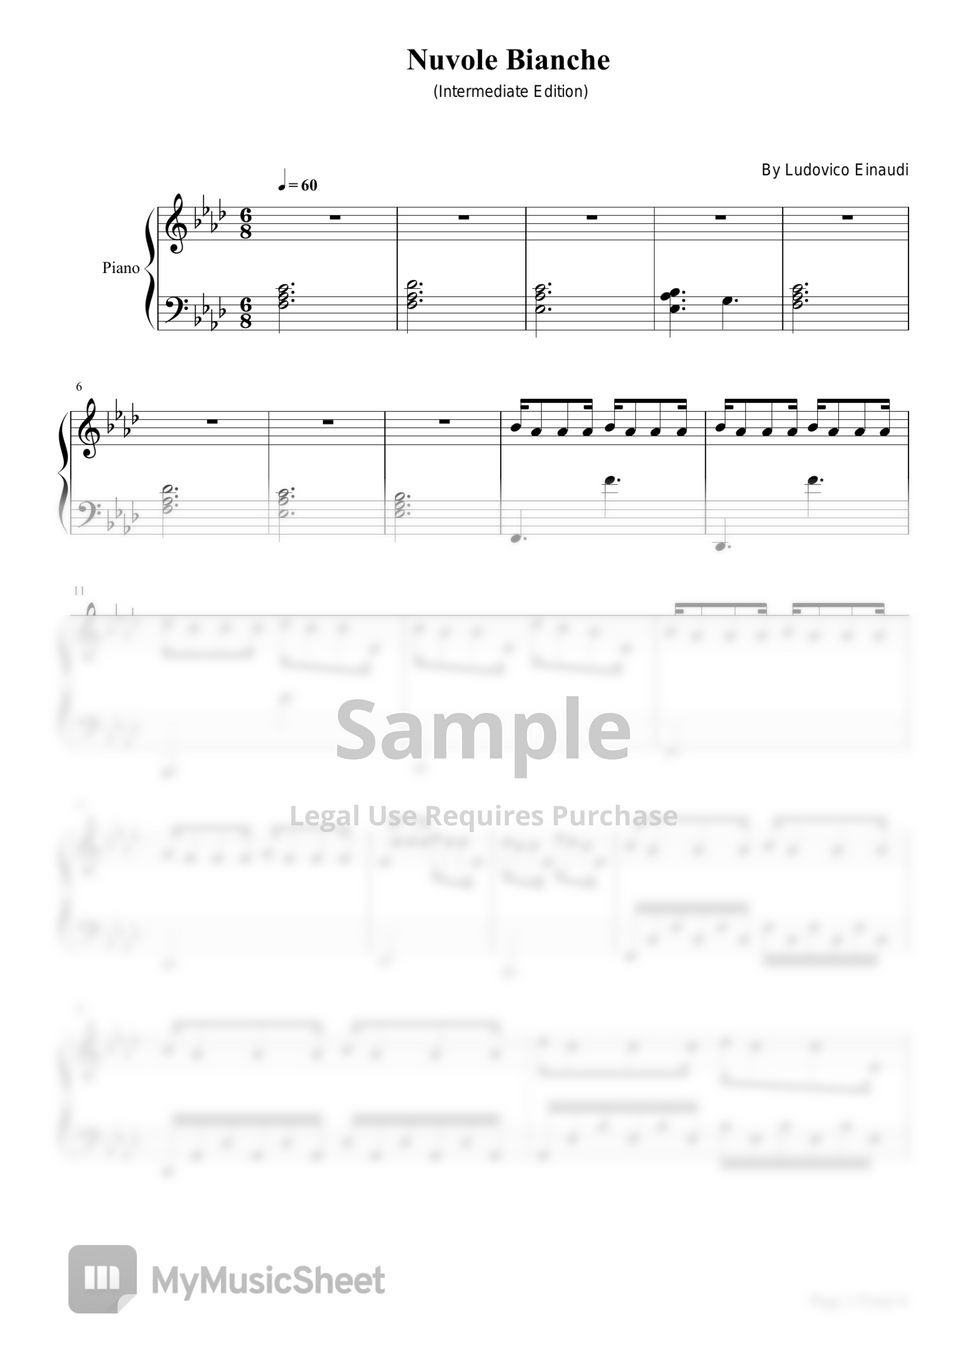 Nuvole bianchi – Ludovico Einaudi . Sheet music for Piano (Solo)